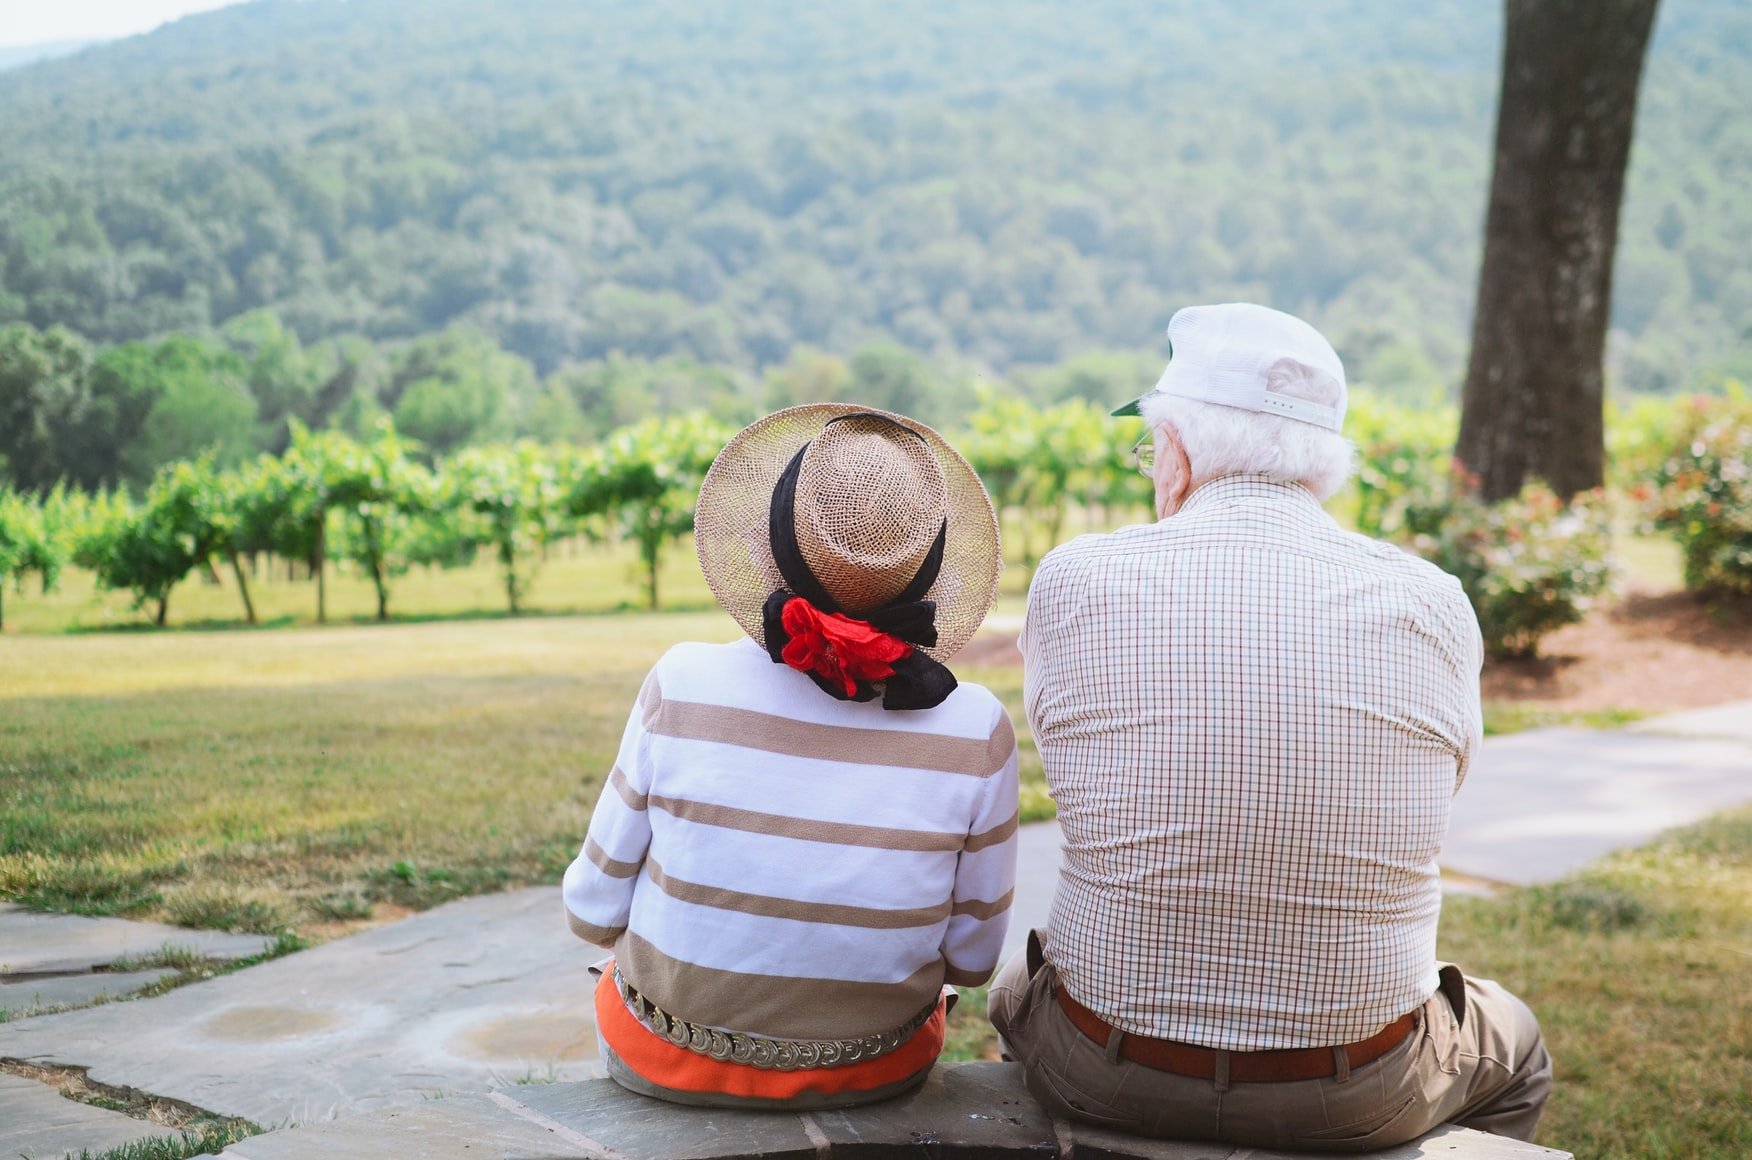 Ein älteres Ehepaar sitzt auf einer grünen Wiese. | Quelle: Unsplash